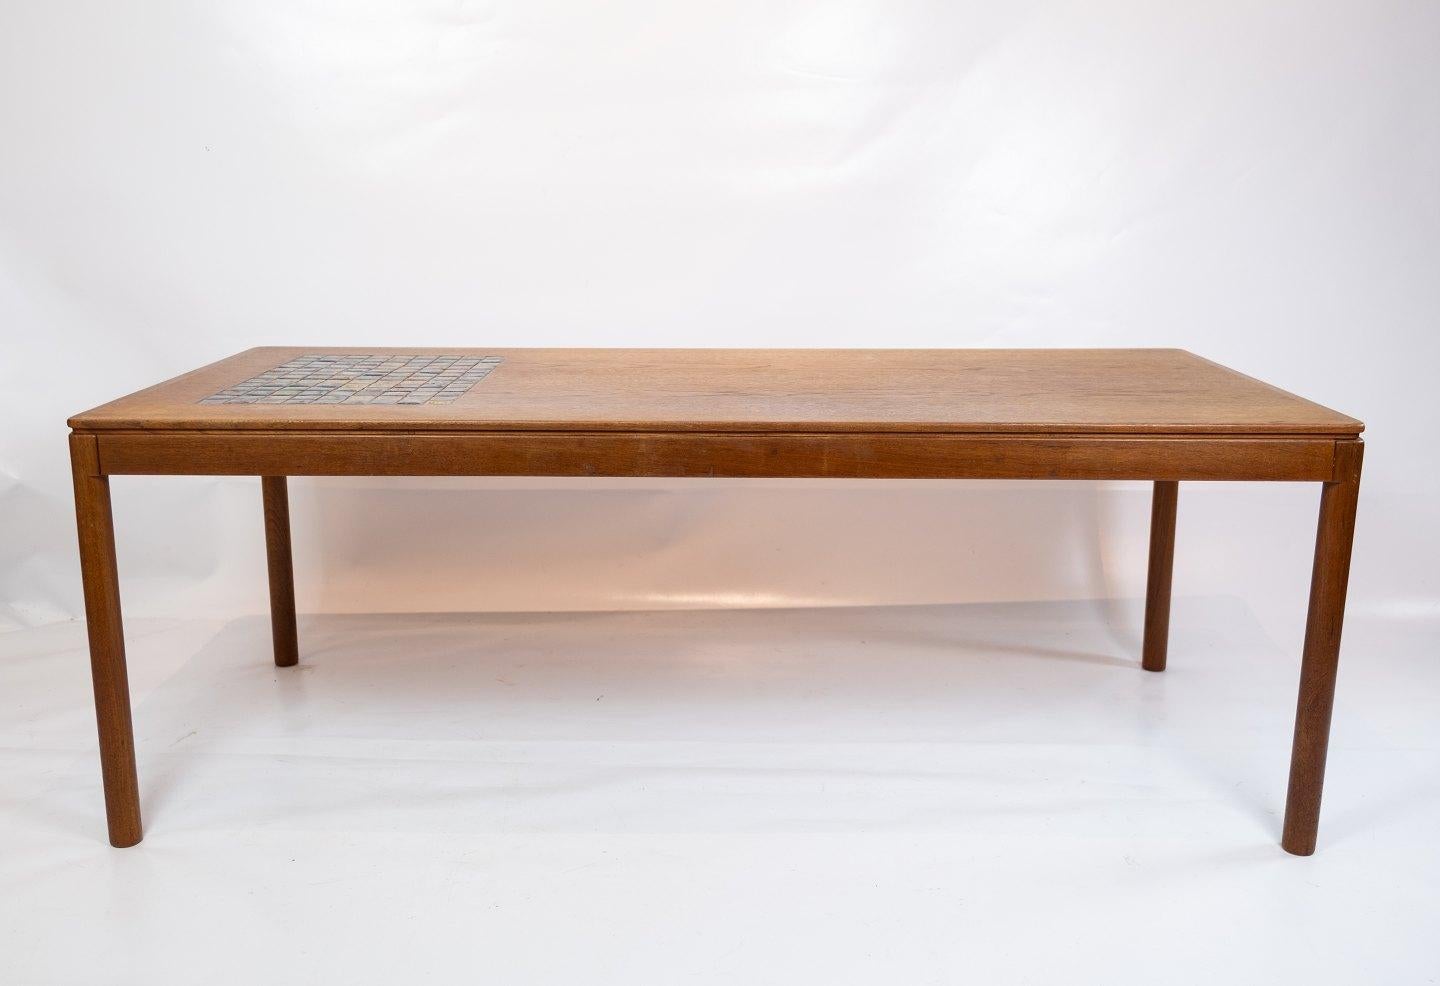 Table basse en teck avec carreaux de céramique bruns de design danois des années 1960. La table est en excellente condition vintage.
         
Cette table basse, fabriquée en teck avec des carreaux de céramique bruns, incarne l'essence du design